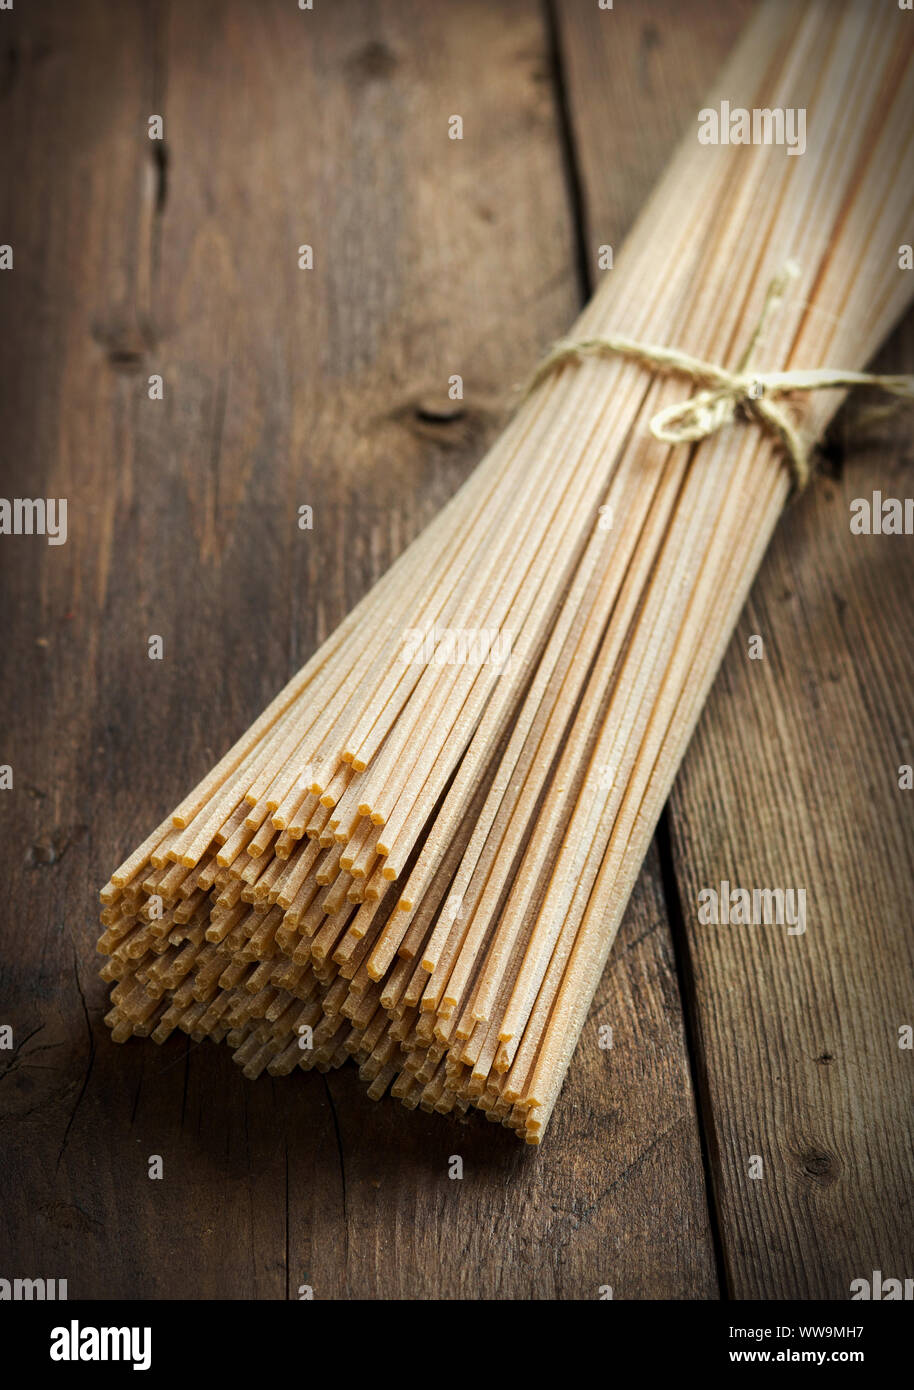 Vollkorn Spaghetti auf dem alten Holztisch Stockfoto